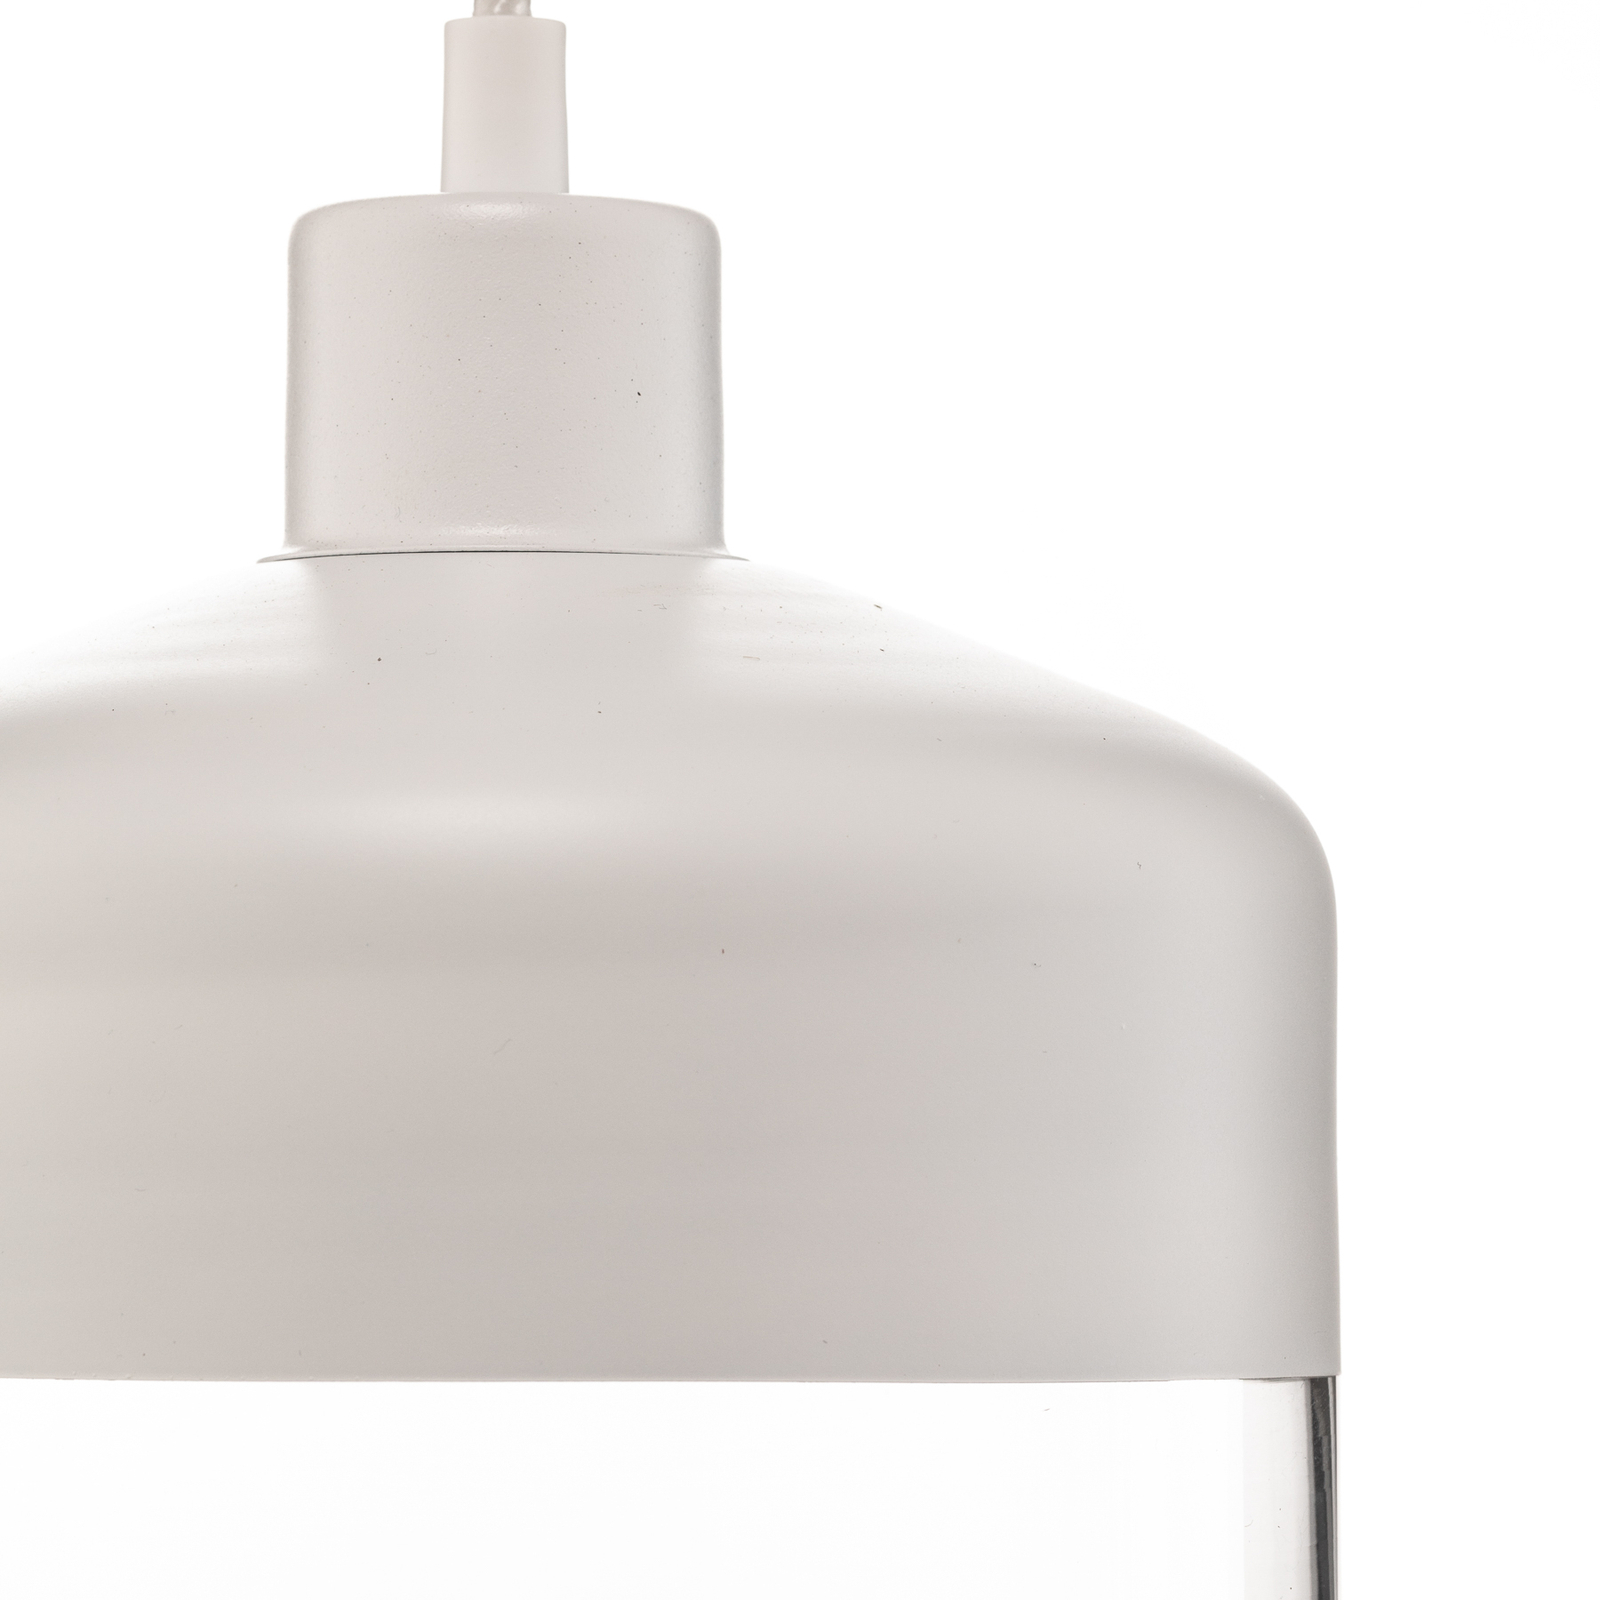 Lampa wisząca Monochrome Flash przezroczysta/biała Ø 17cm